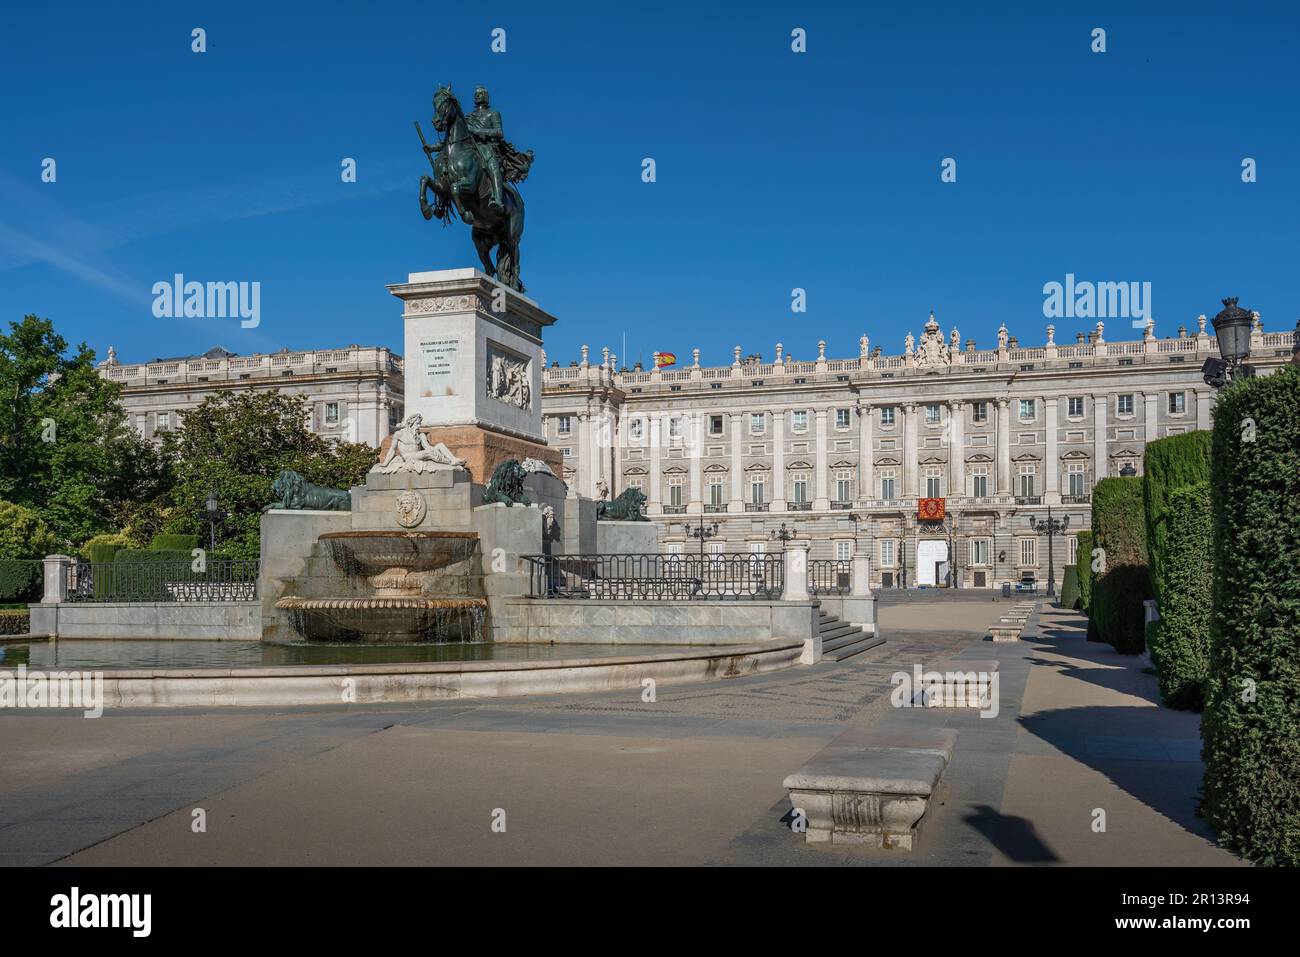 Plaza de Oriente avec Monument à Philip IV (Felipe IV) et Palais Royal de Madrid - Madrid, Espagne Banque D'Images